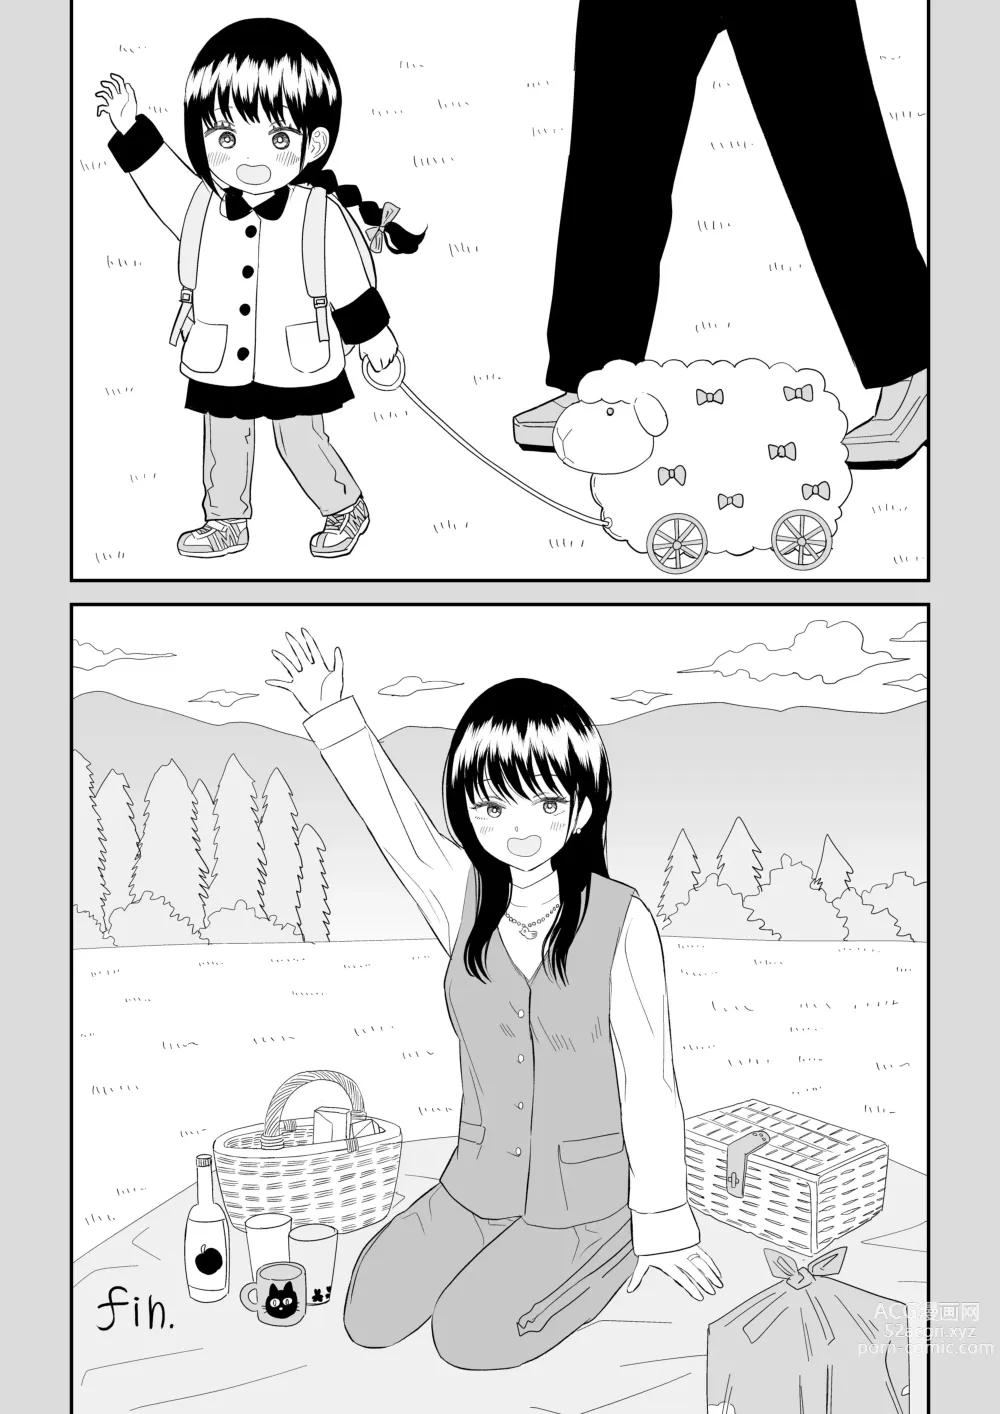 Page 56 of doujinshi Cool-Dere JK 3 Shitsurakuen Hen